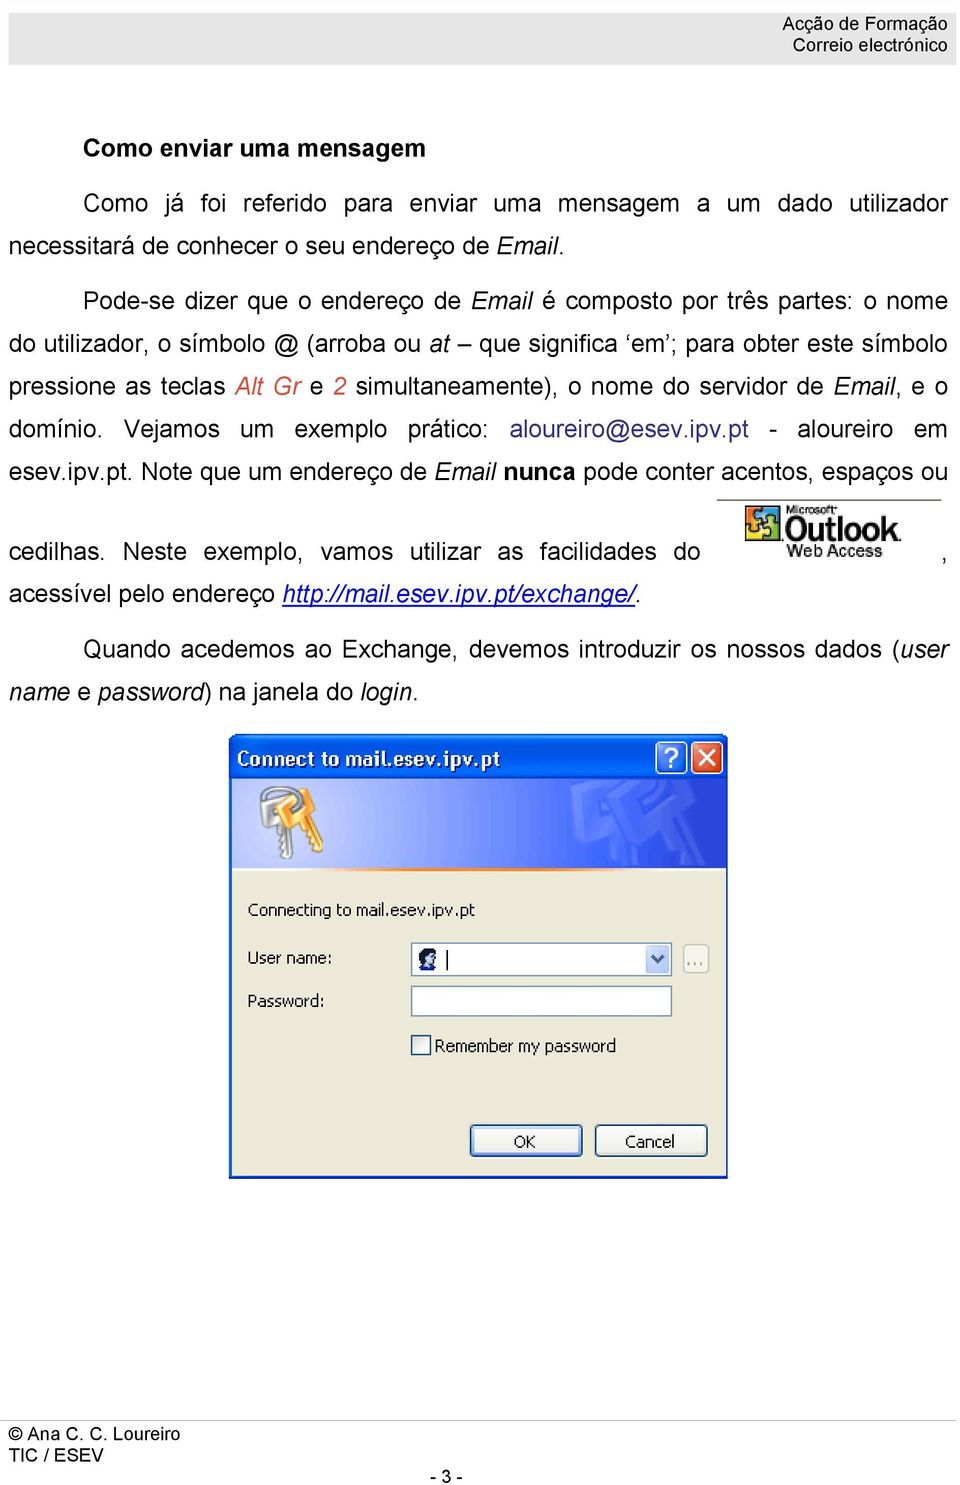 simultaneamente), o nome do servidor de Email, e o domínio. Vejamos um exemplo prático: aloureiro@esev.ipv.pt - aloureiro em esev.ipv.pt. Note que um endereço de Email nunca pode conter acentos, espaços ou cedilhas.